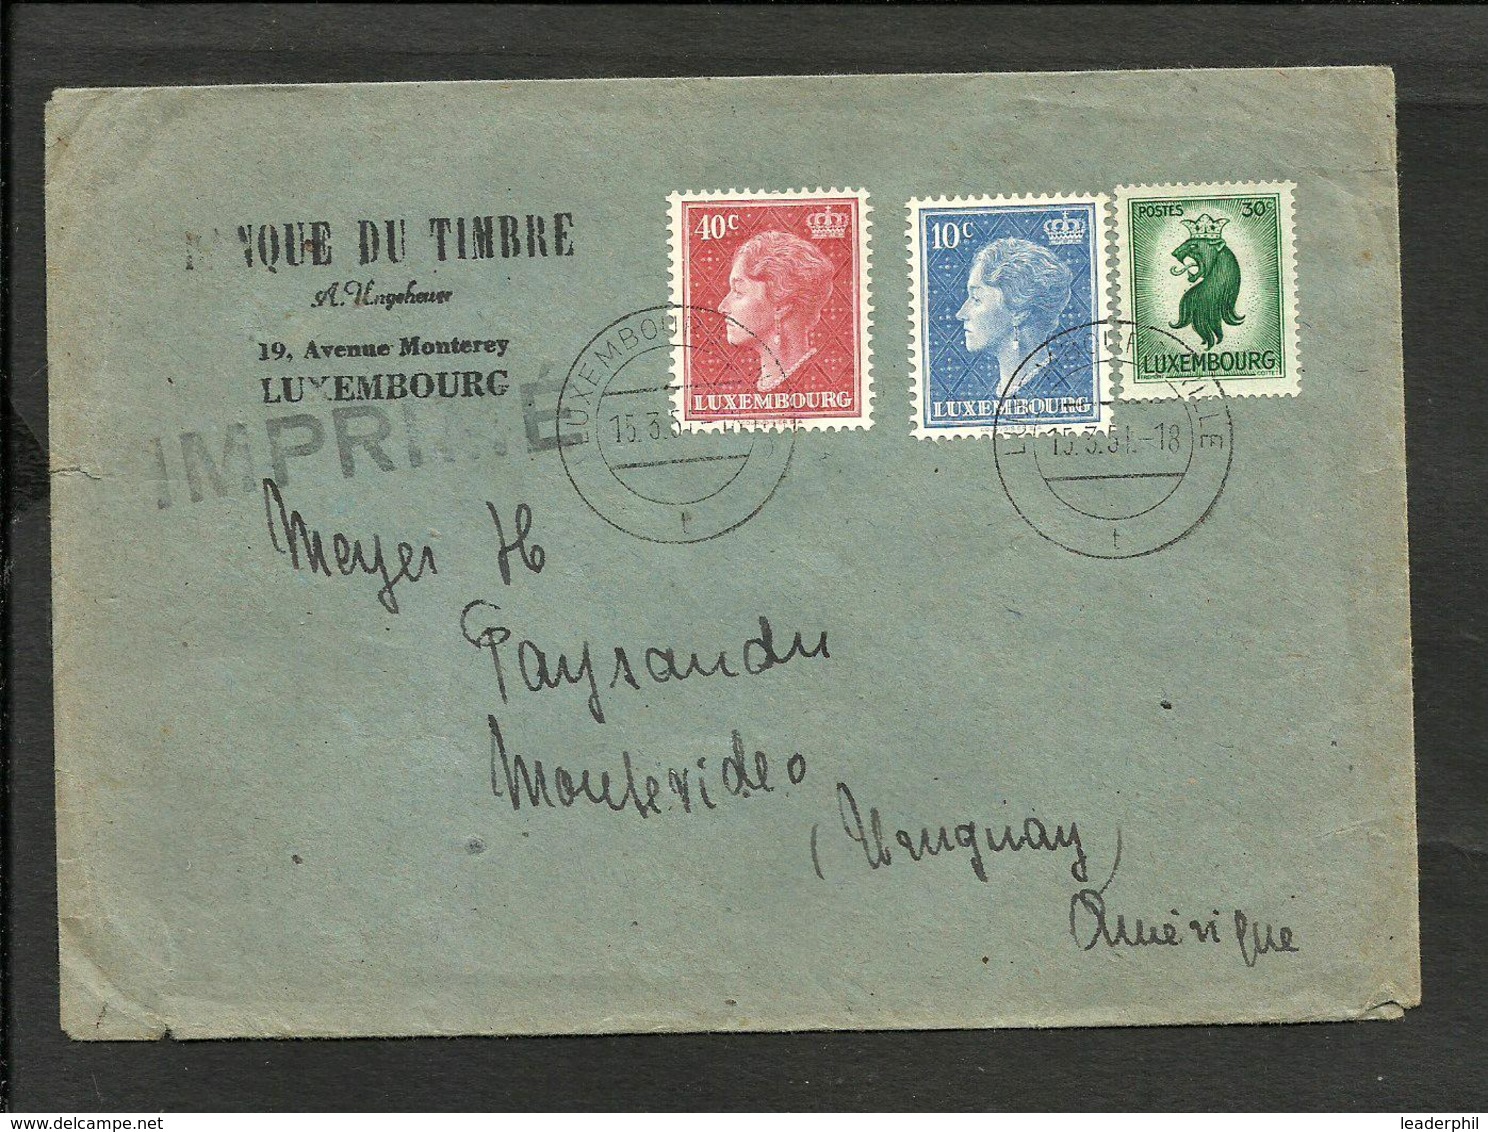 LUXEMBURG 1951 COVER TO URUGUAY, RARE DESTINATION - 1948-58 Charlotte Di Profilo Sinistro